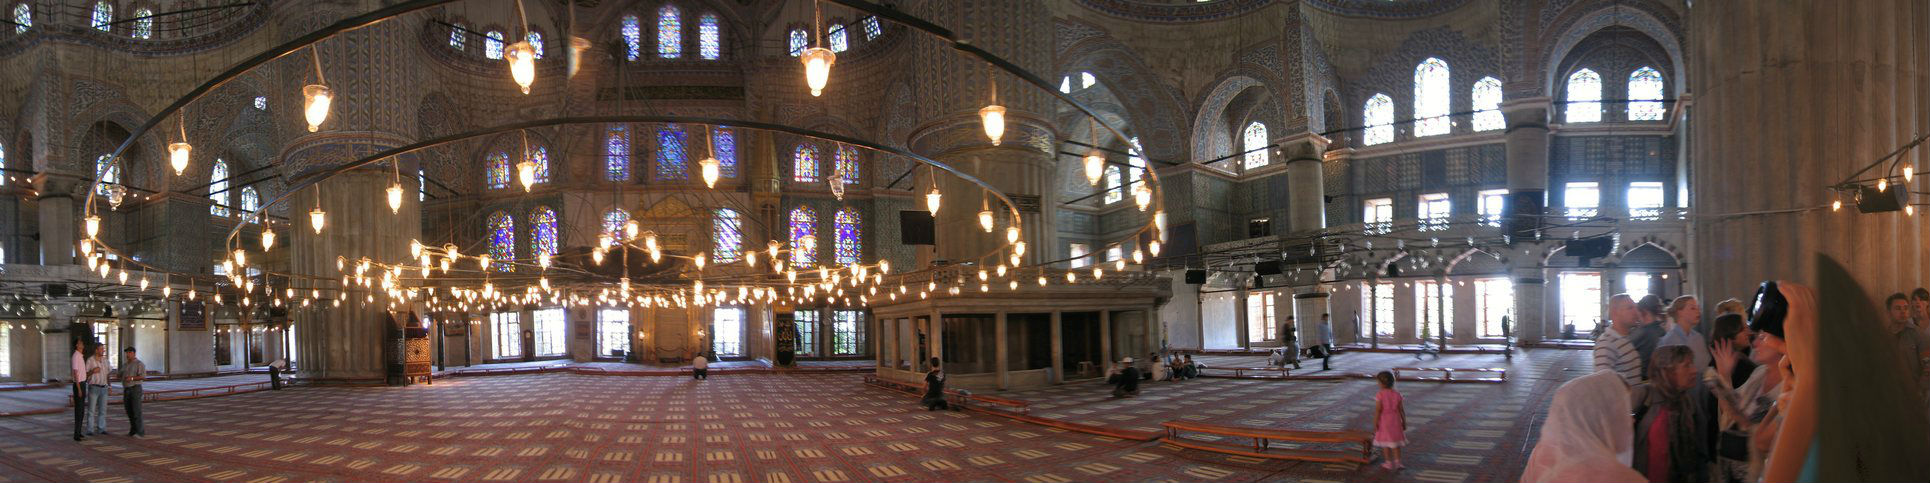 Blue Mosque, Sultanamet Square, Istanbul